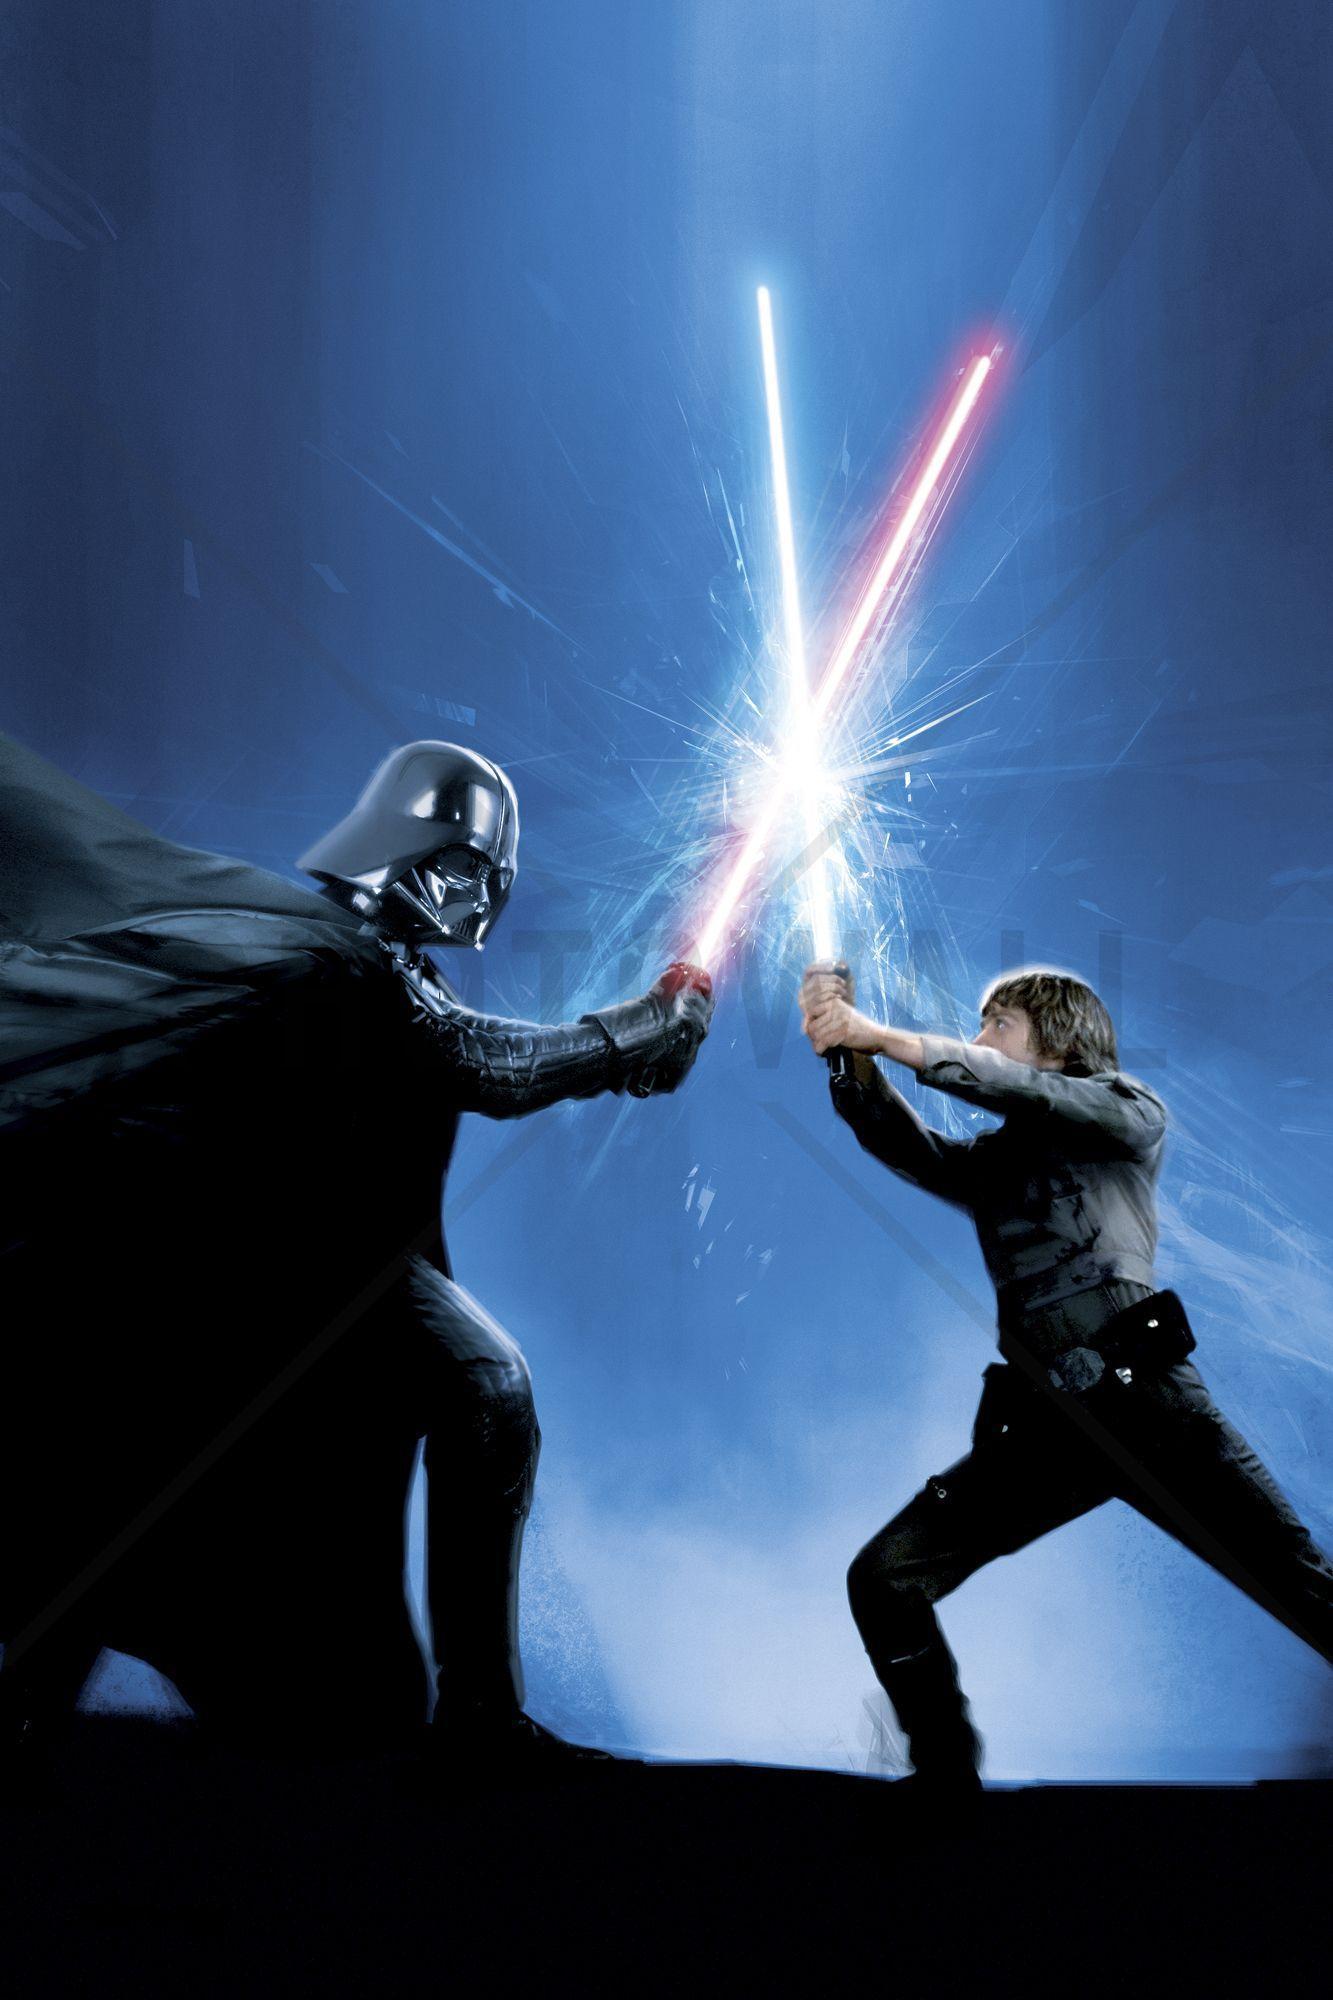 11 Darth Vader and Luke Skywalker Wallpapers  WallpaperSafari